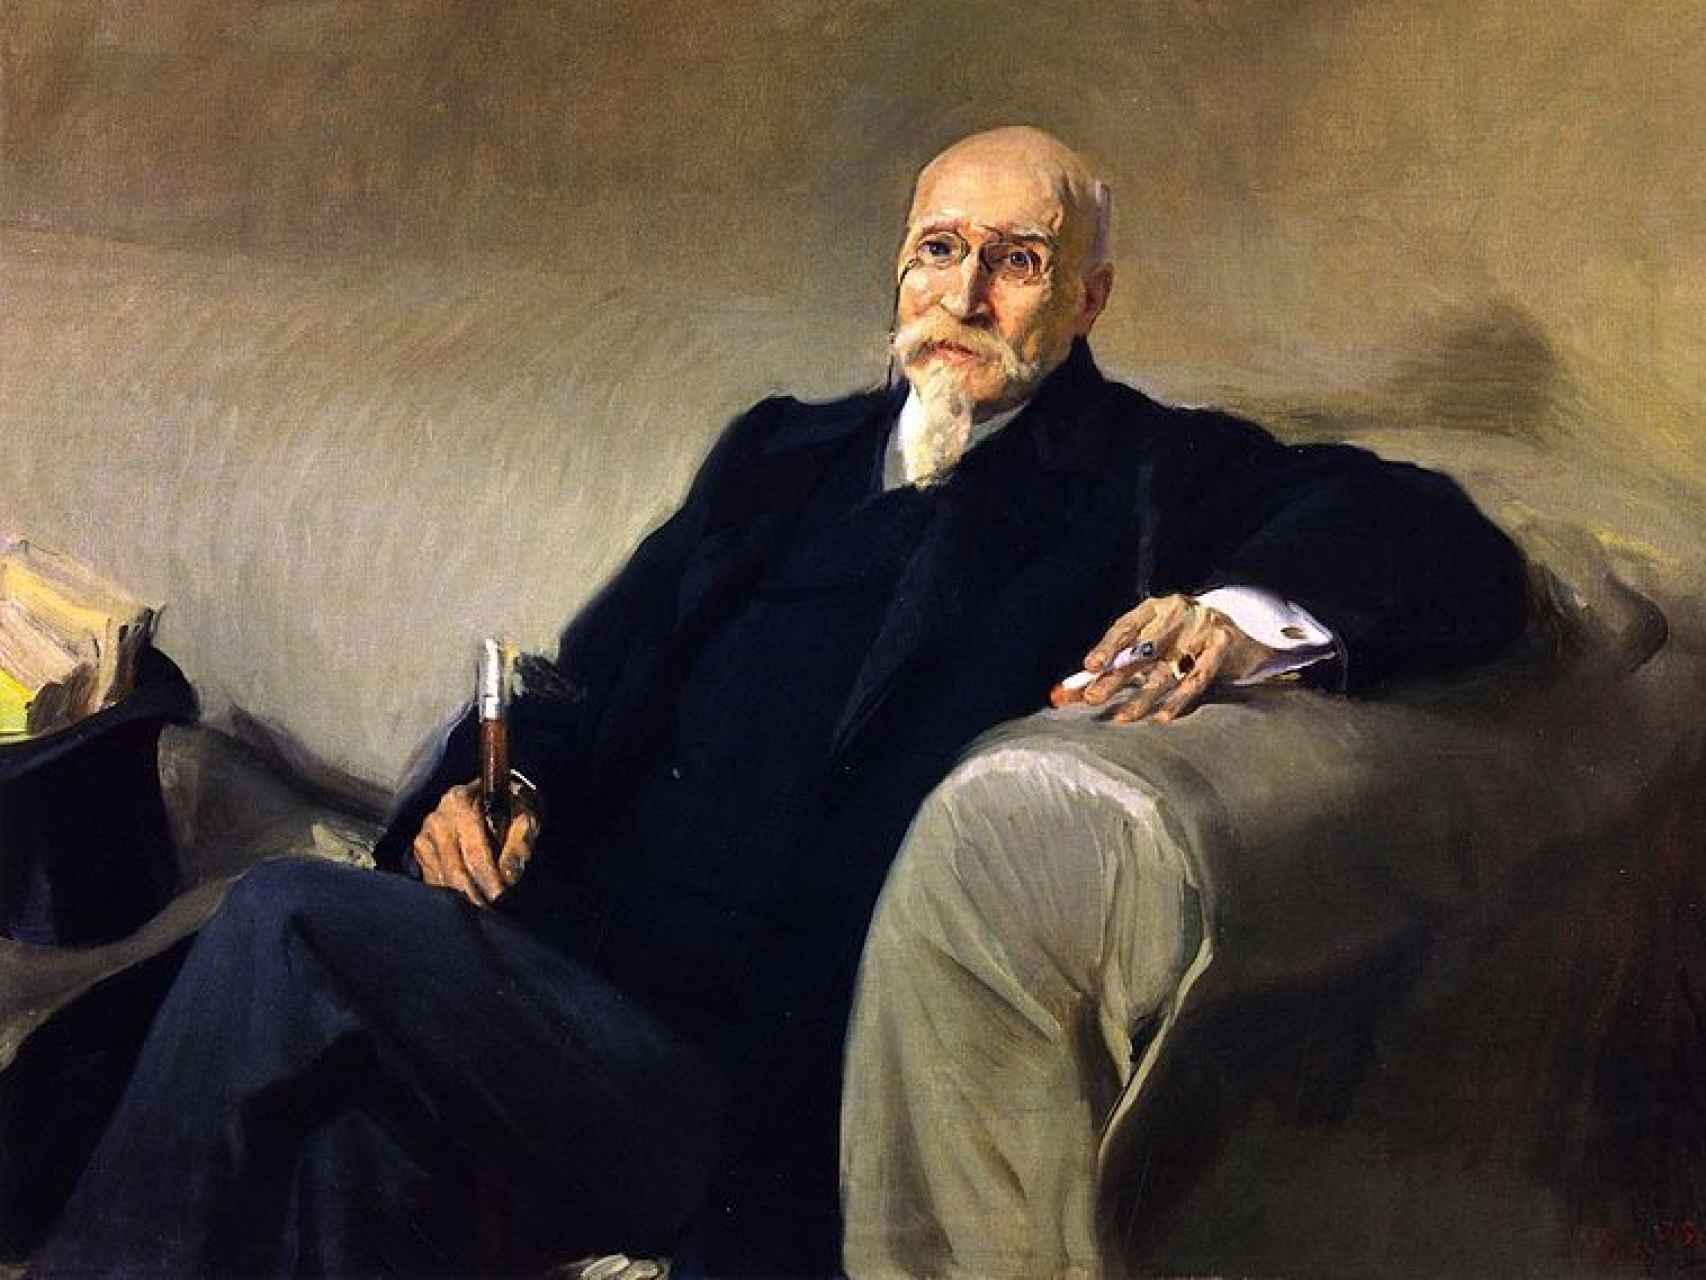 Retrato de Joaquín Sorolla  del ingeniero, dramaturgo, político y matemático español José Echegaray (1832-1916).